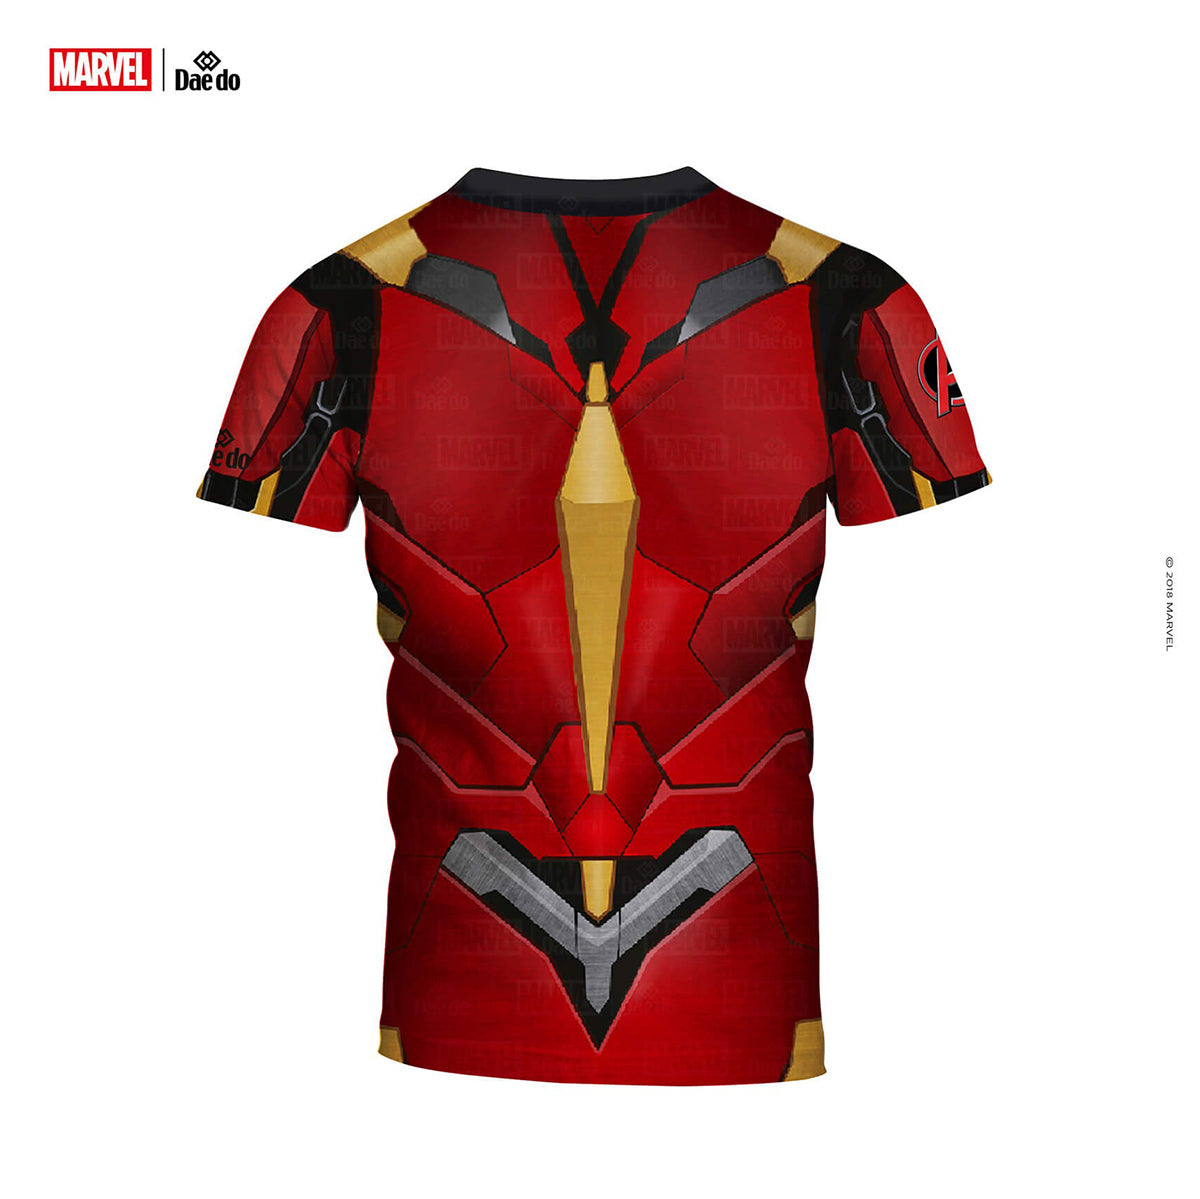 T-Shirt mit Iron Man-Volldruck von Daedo, MARV52101 